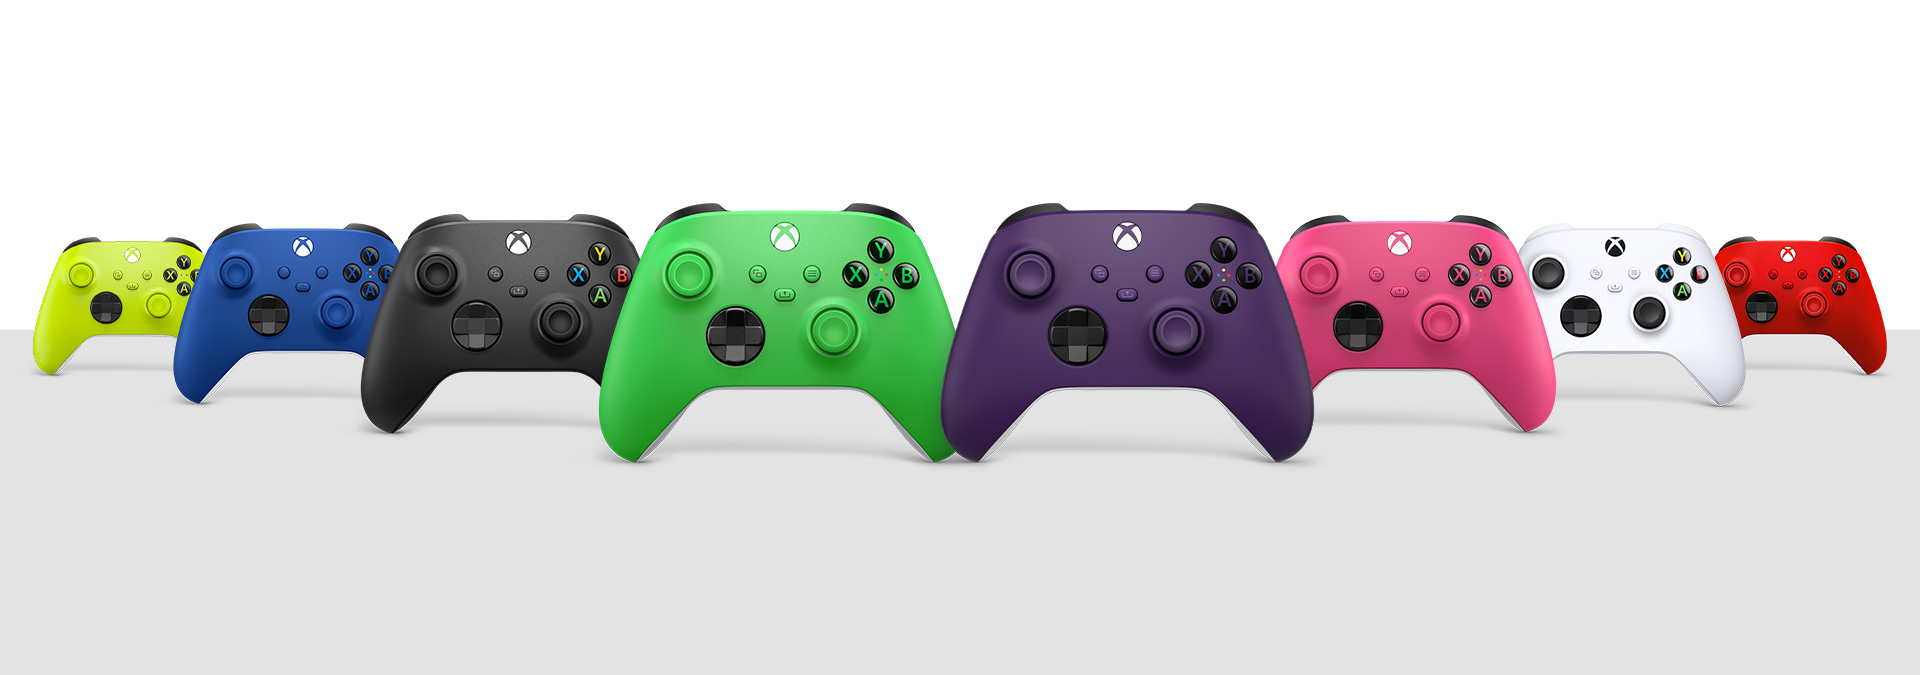 Ασύρματο χειριστήριο Xbox σε Carbon Black, Robot White, Shock Blue, Pulse Red, Electric Volt, Deep Pink, Velocity Green και Astral Purple